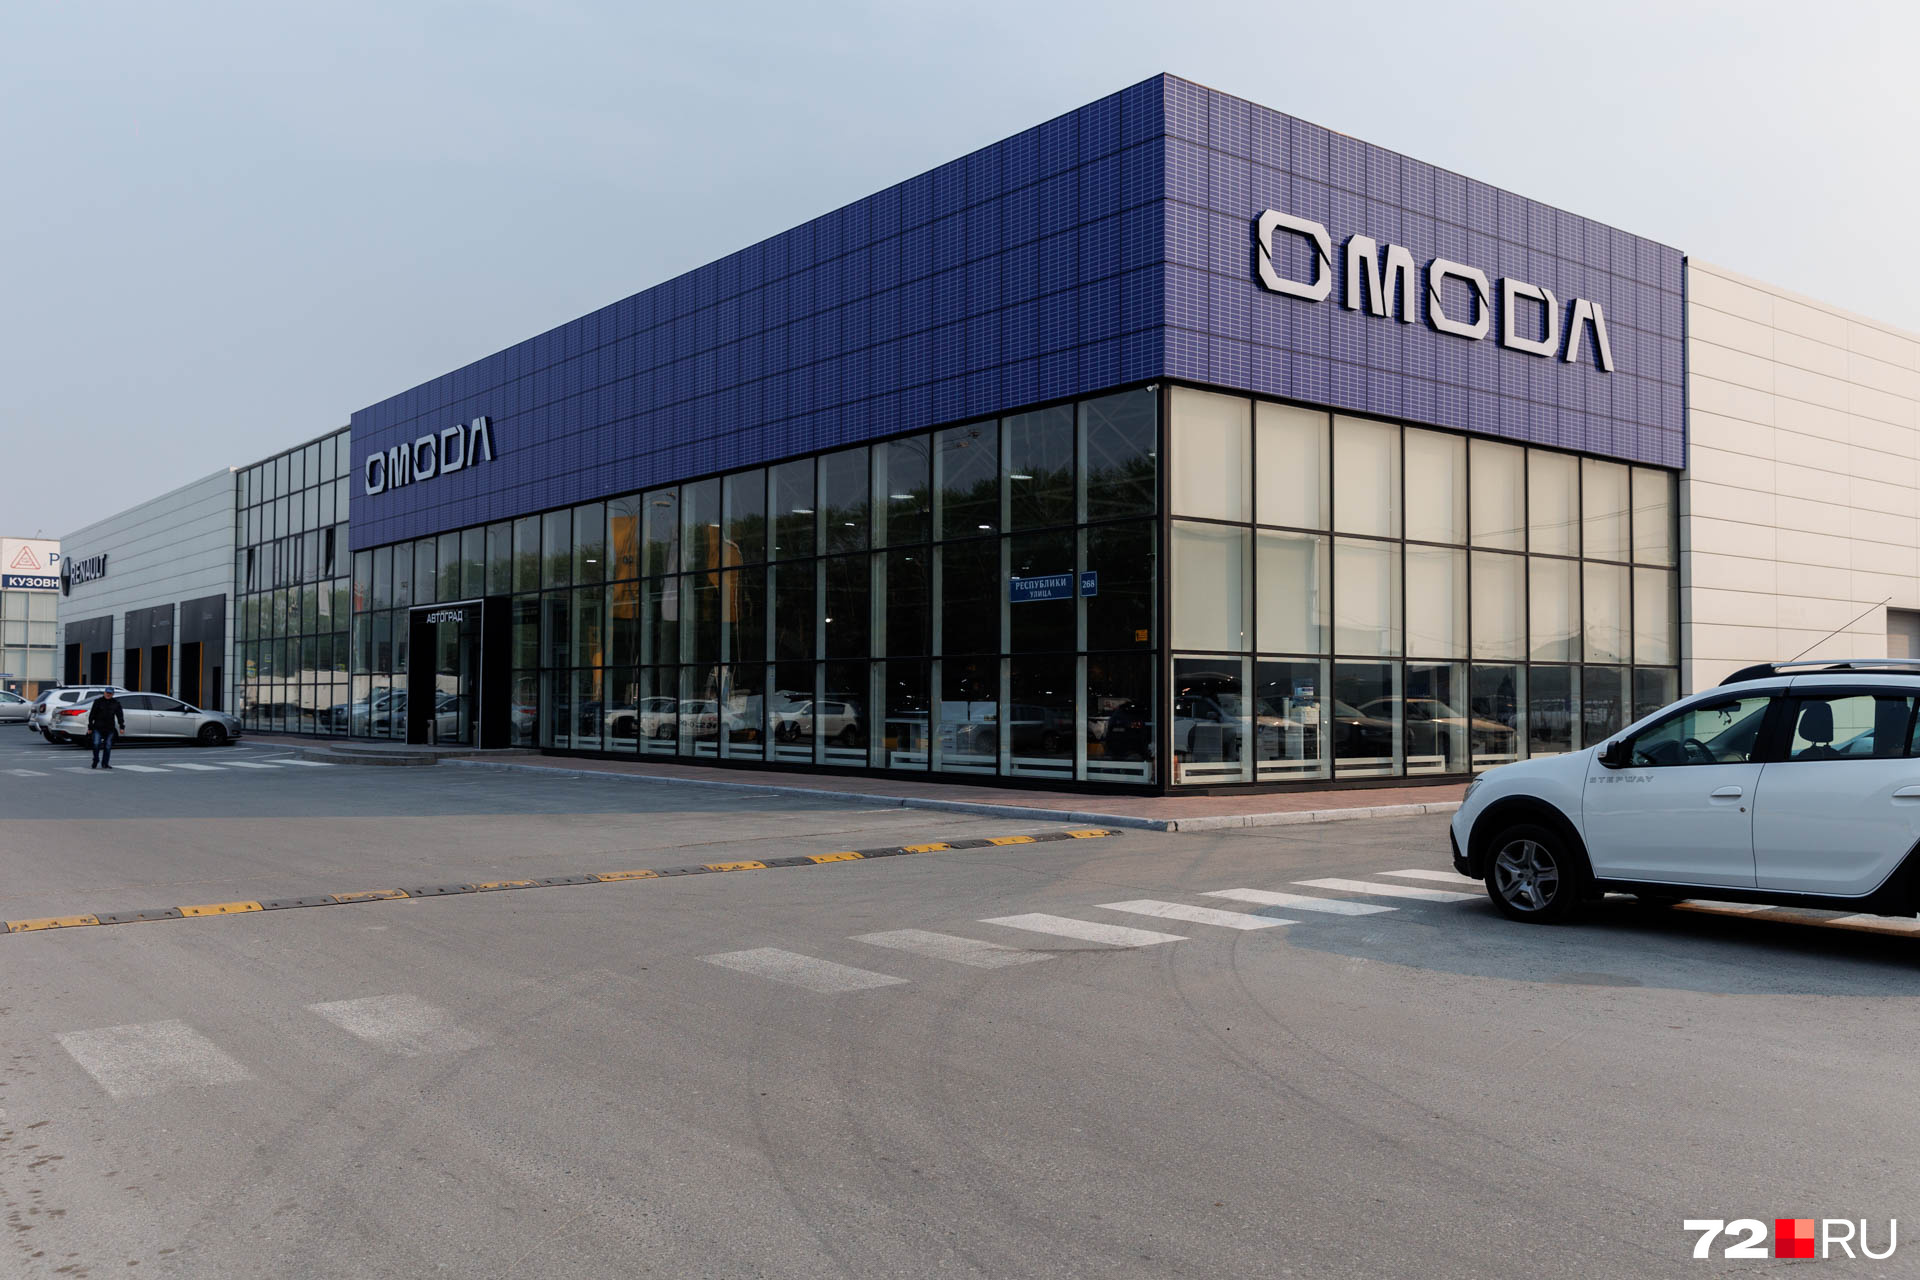 Omoda — относительно новый игрок на автомобильном рынке России. Принадлежит китайскому производителю Chery